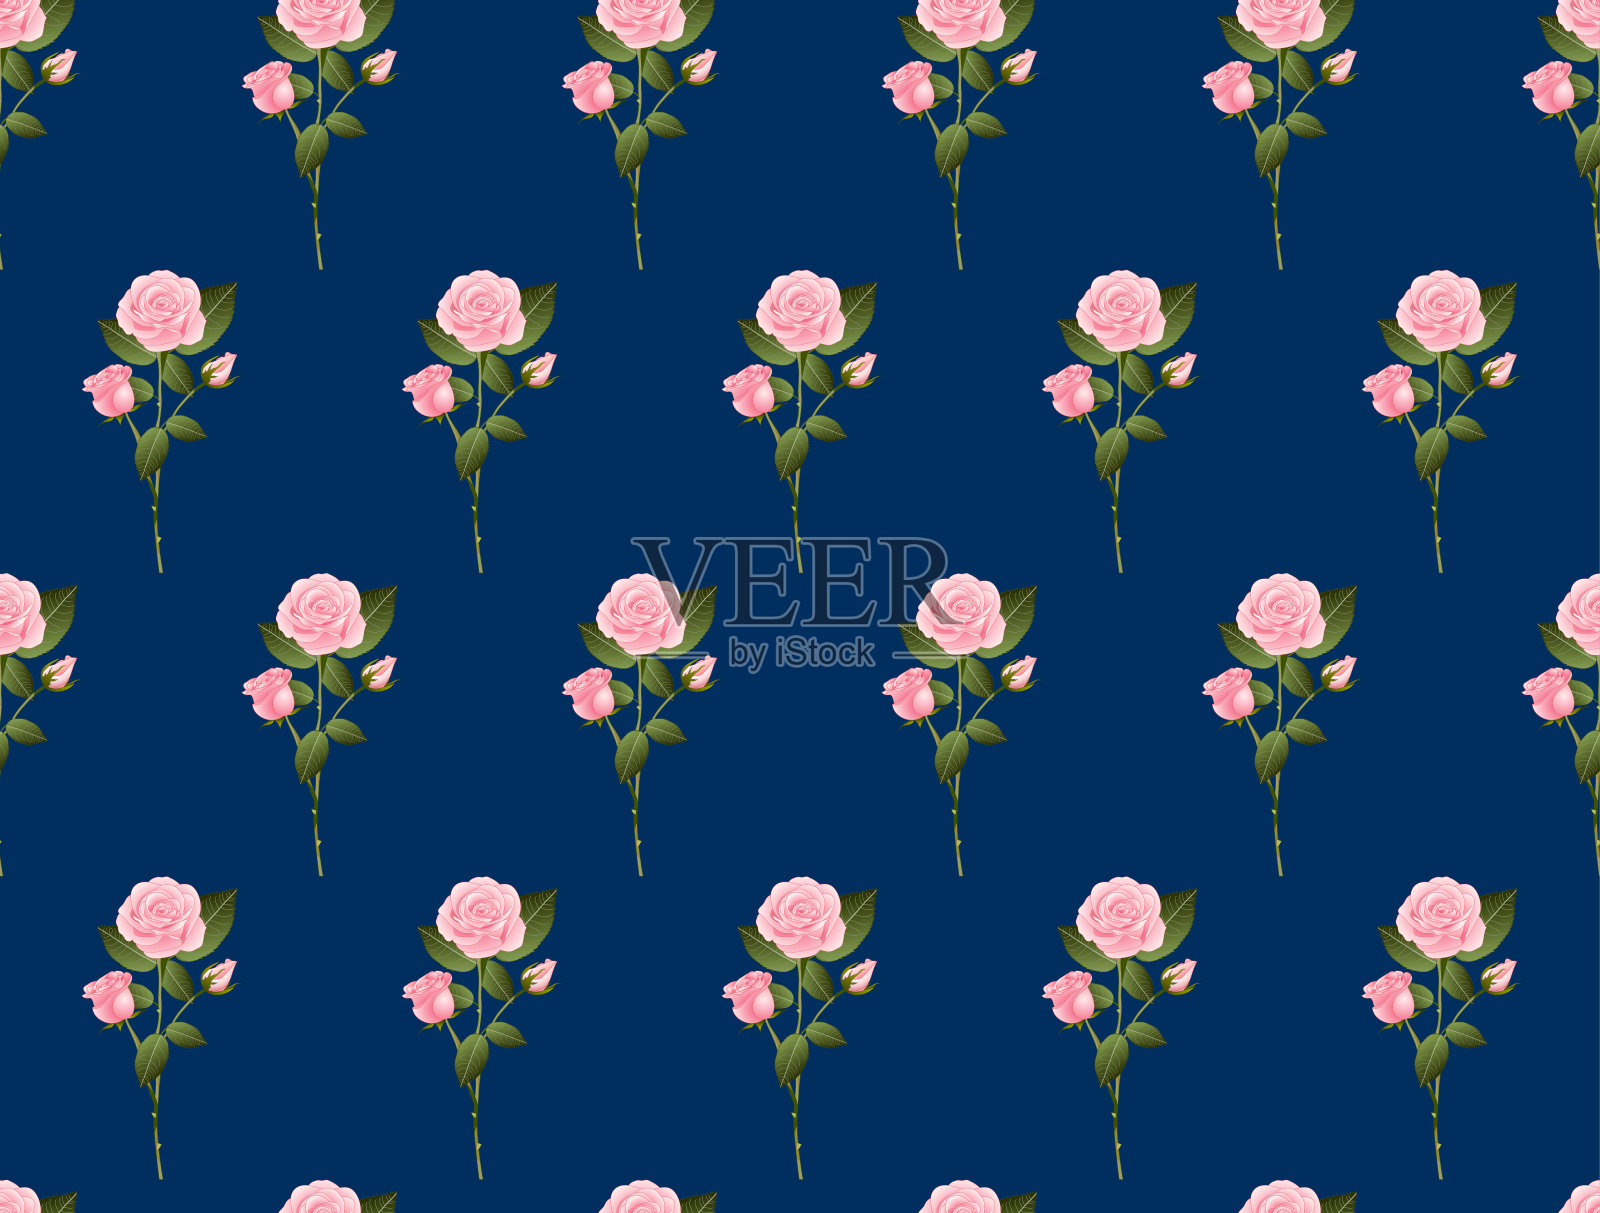 靛蓝色背景上的粉红玫瑰花束插画图片素材